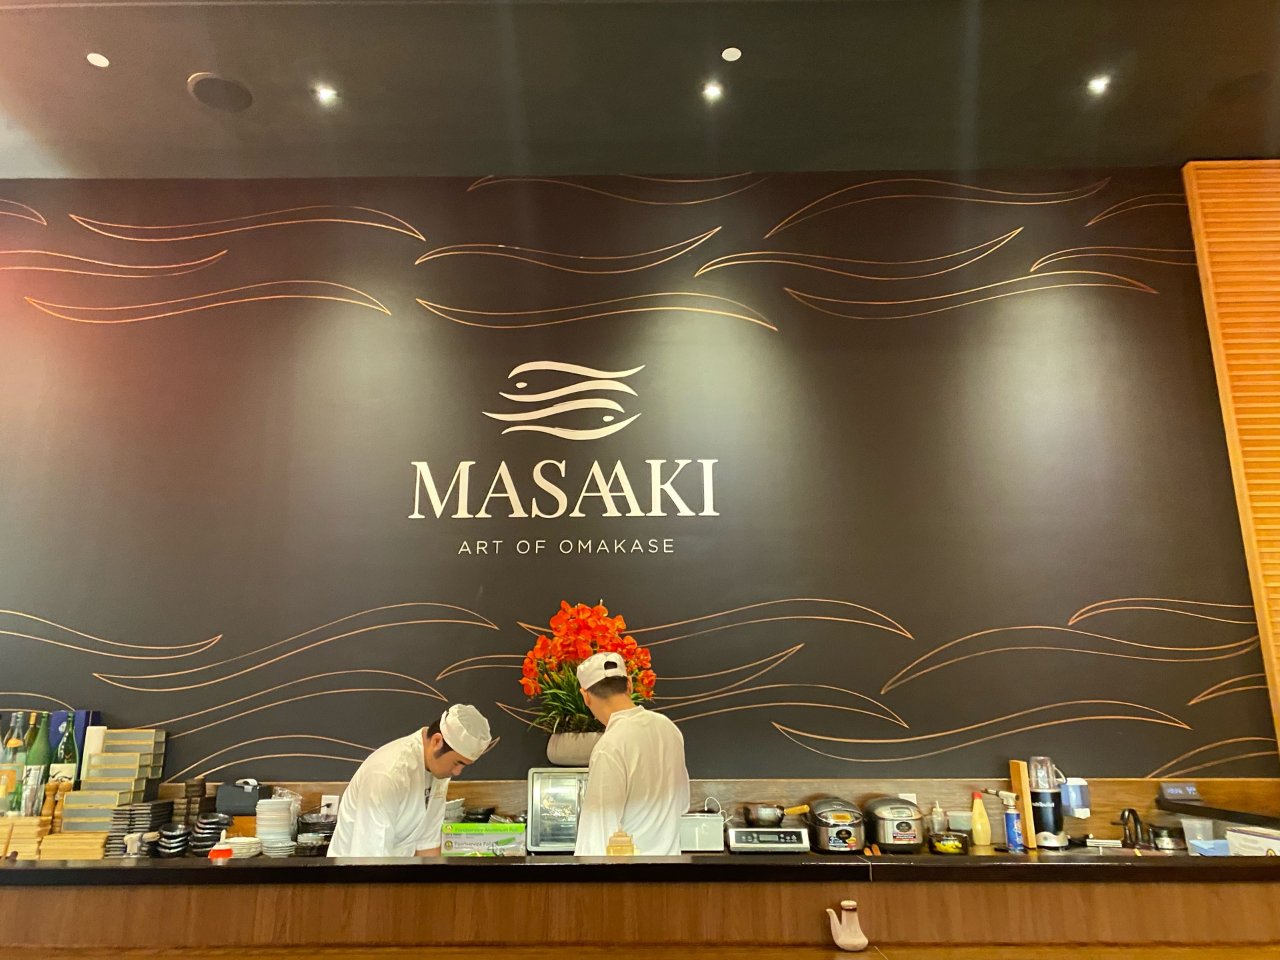 Masaaki-Omakase